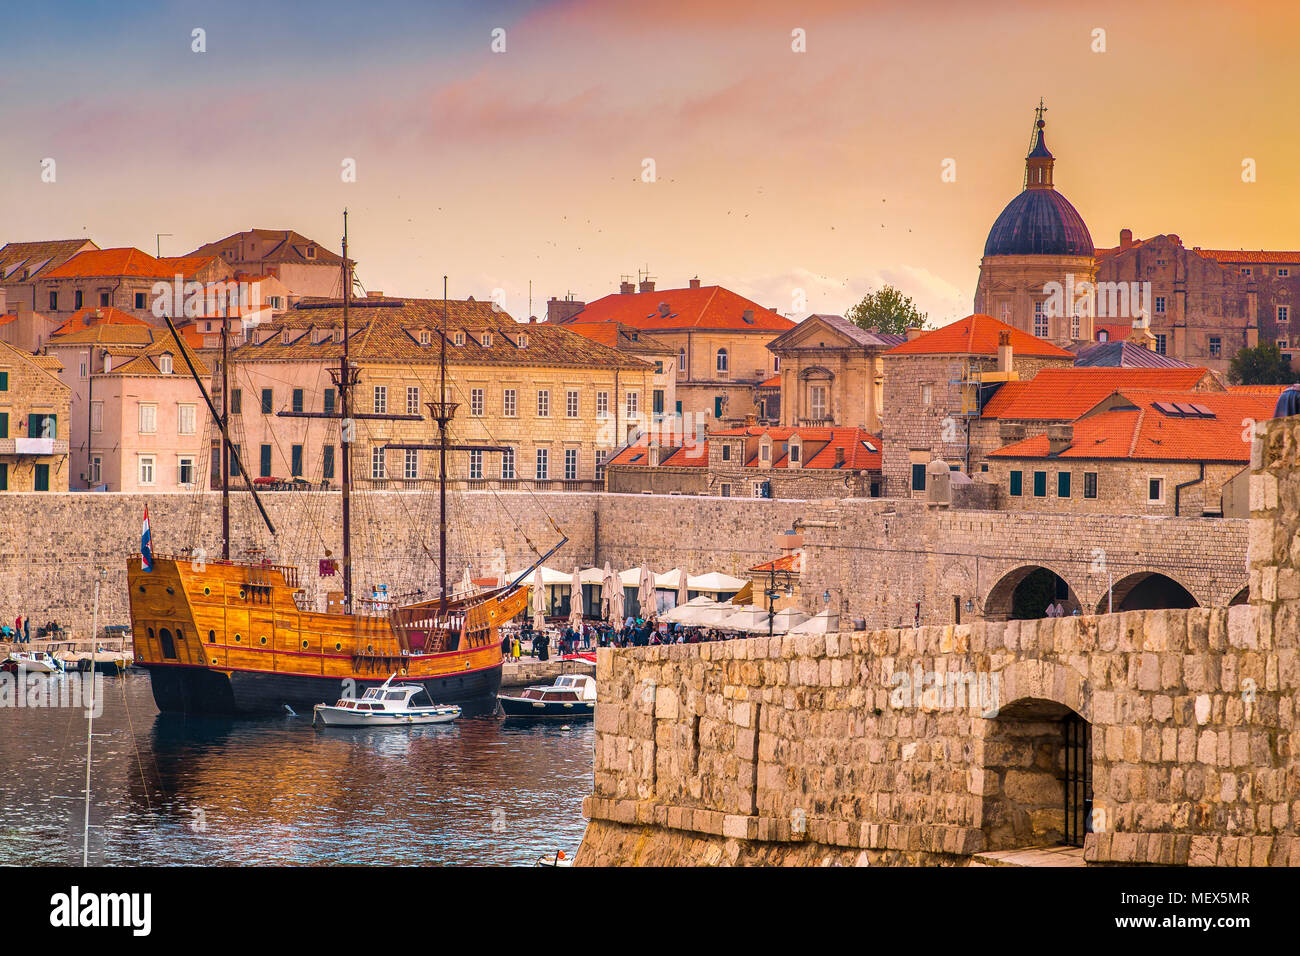 Vista aérea panorámica del casco histórico de la ciudad de Dubrovnik, uno de los más famosos destinos turísticos en el Mar Mediterráneo, al atardecer, Croacia Foto de stock